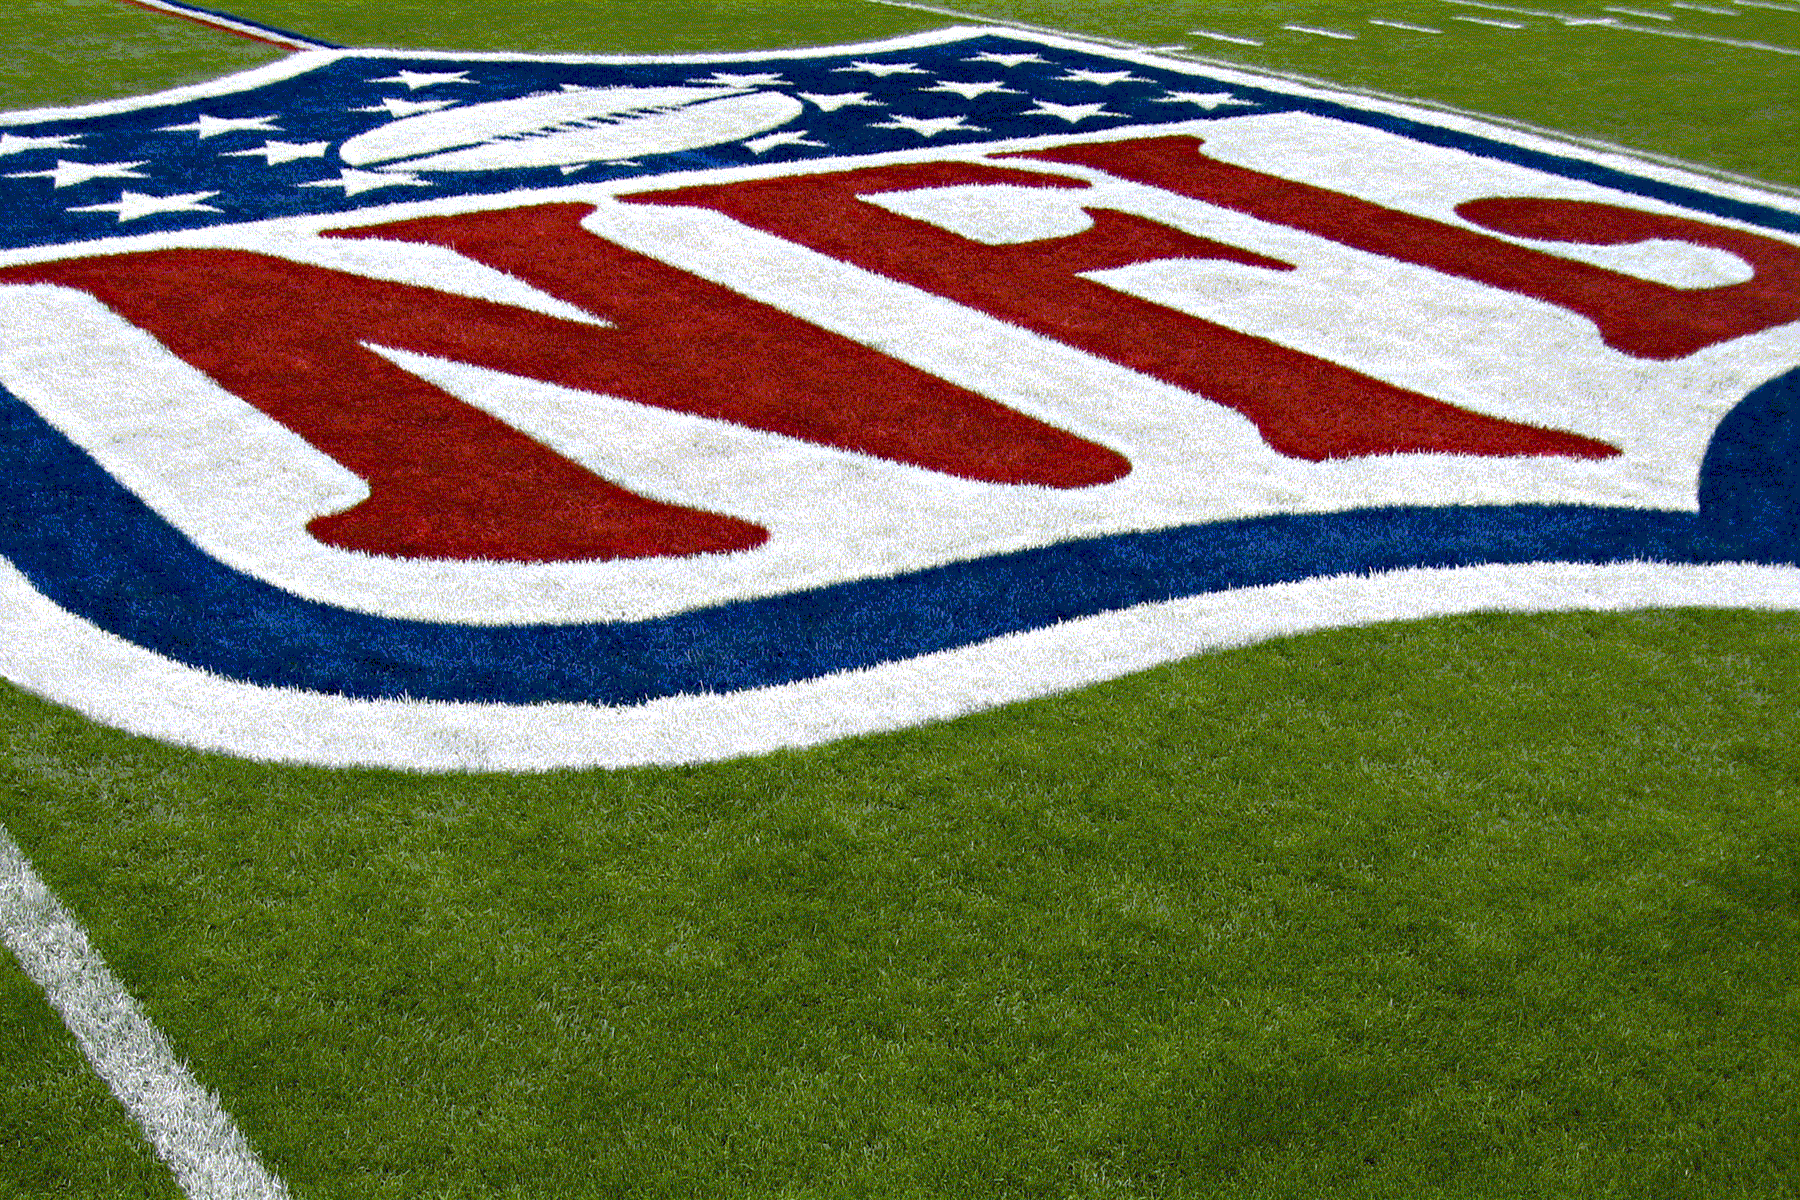 NFL Grass Logo, wallpaper, NFL Grass Logo hd wallpaper, backgrounds